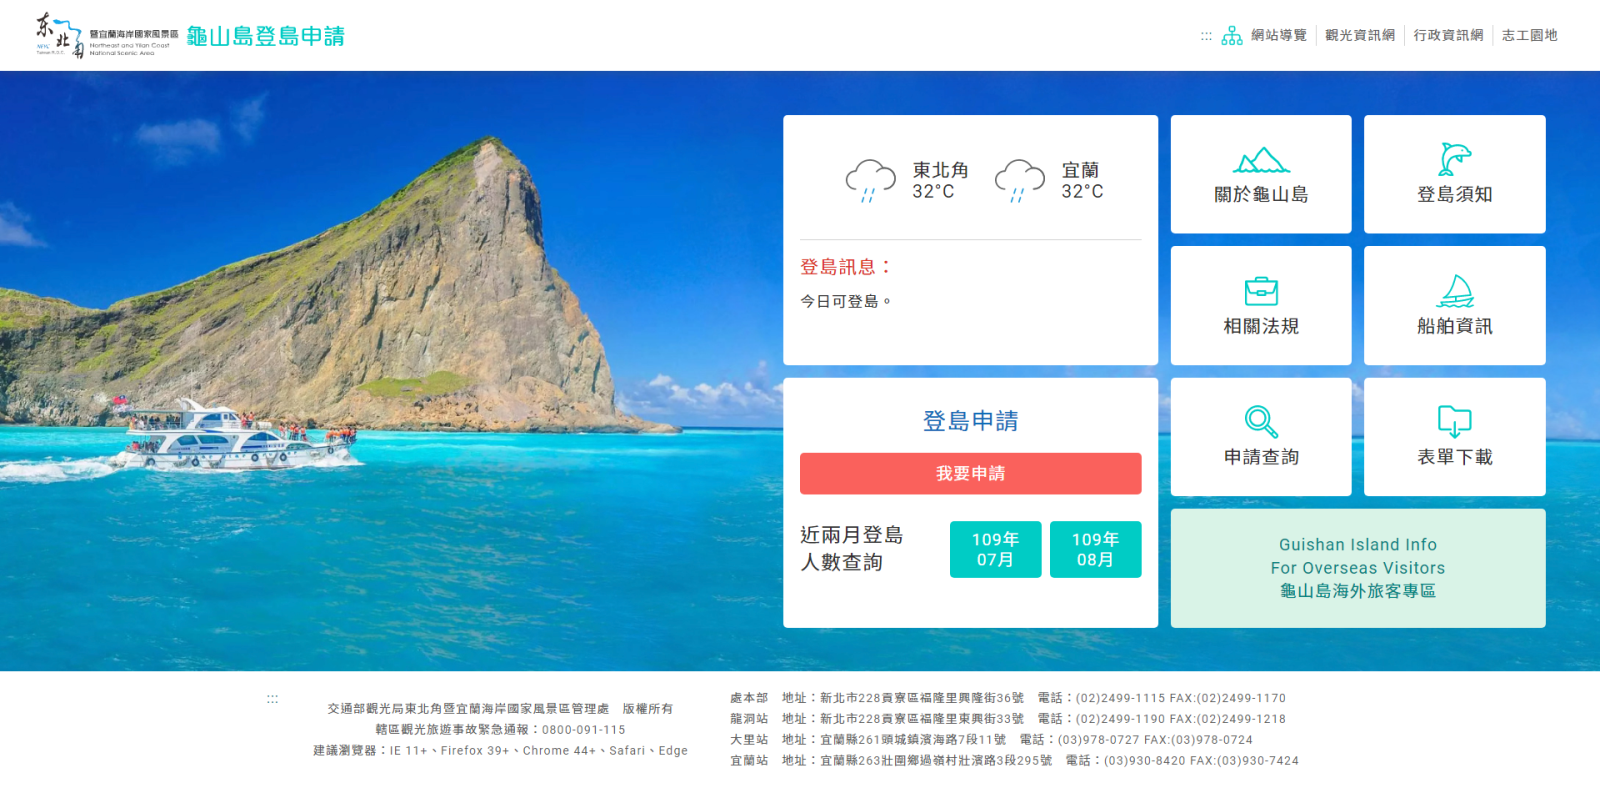 Phiên bản mới của hệ thống ứng dụng hạ cánh đảo Guishan